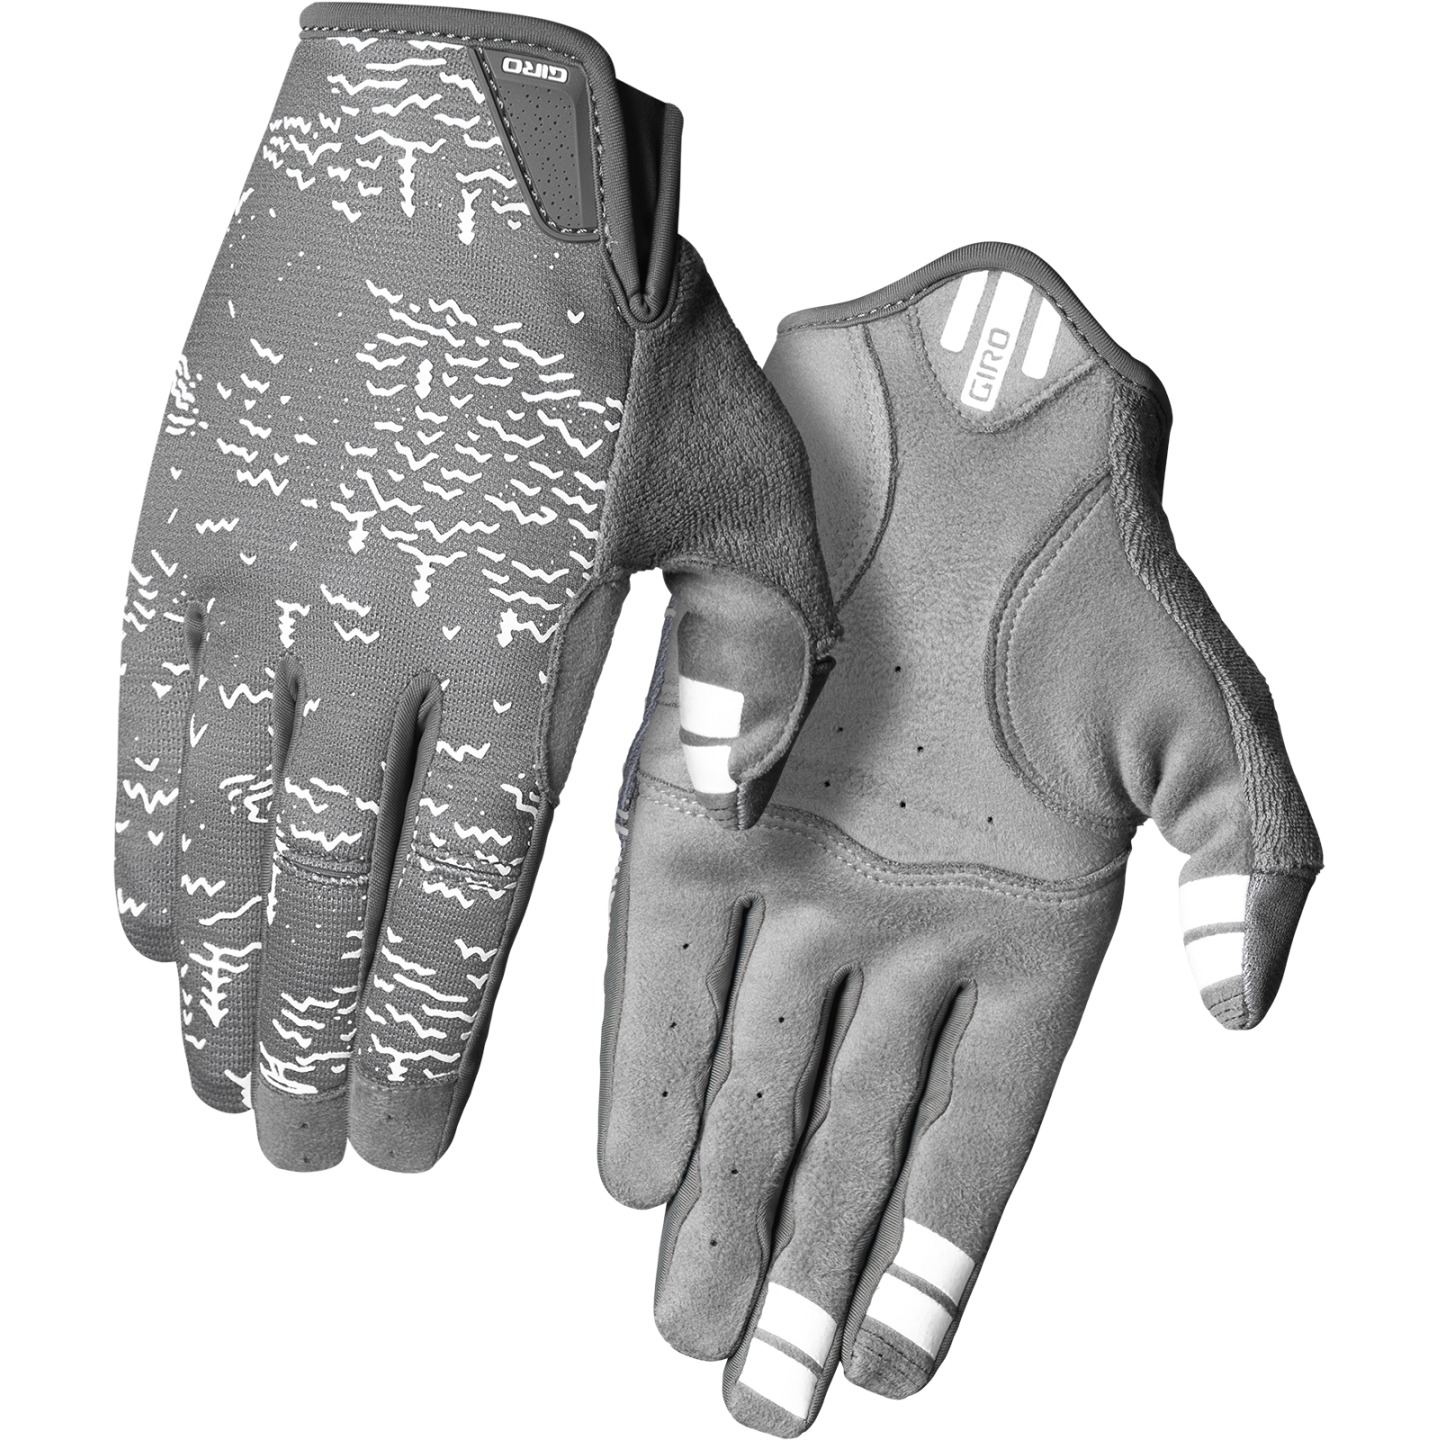 Produktbild von Giro La DND Handschuhe Damen - dark shadow/white scree